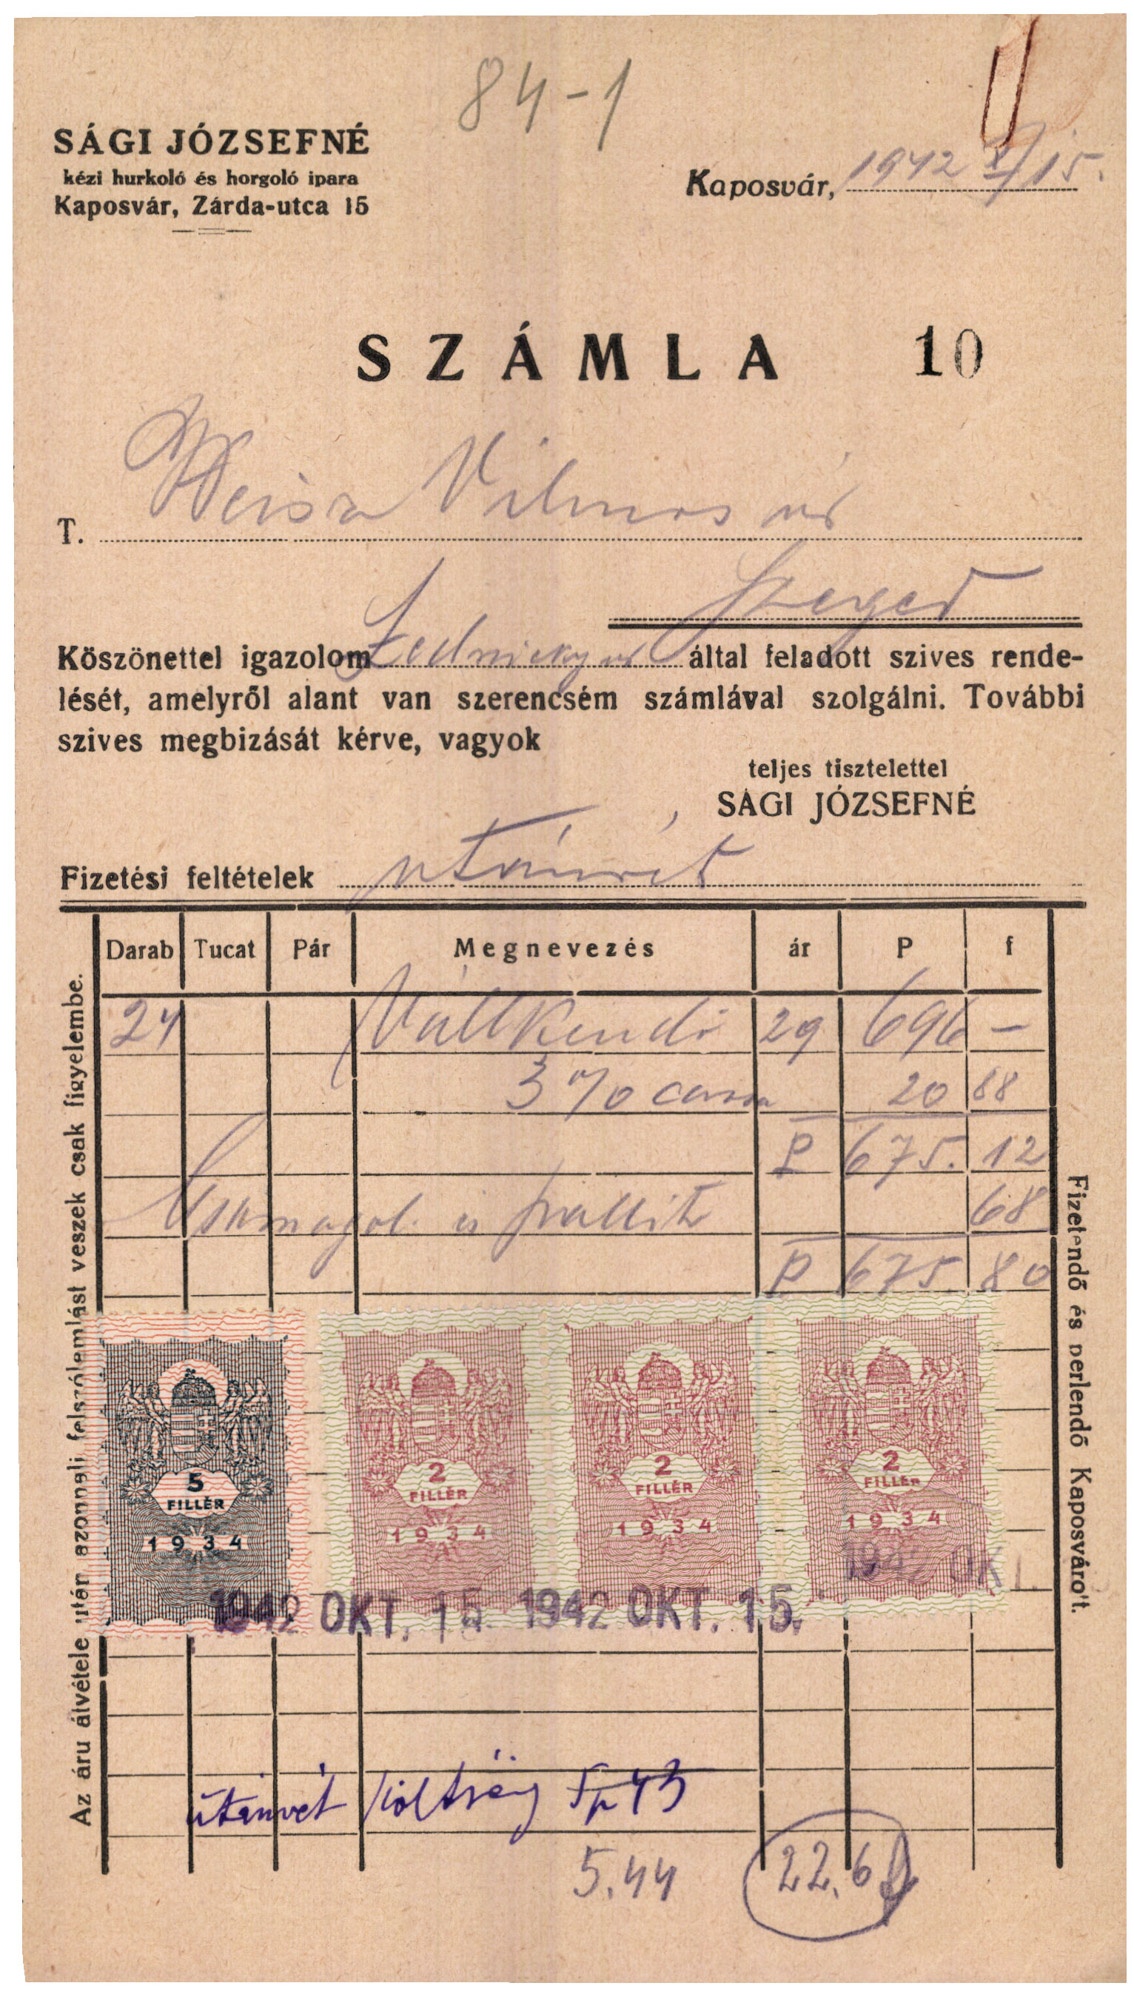 Sági Józsefné kézi hurkoló és horgoló ipara (Magyar Kereskedelmi és Vendéglátóipari Múzeum CC BY-NC-SA)